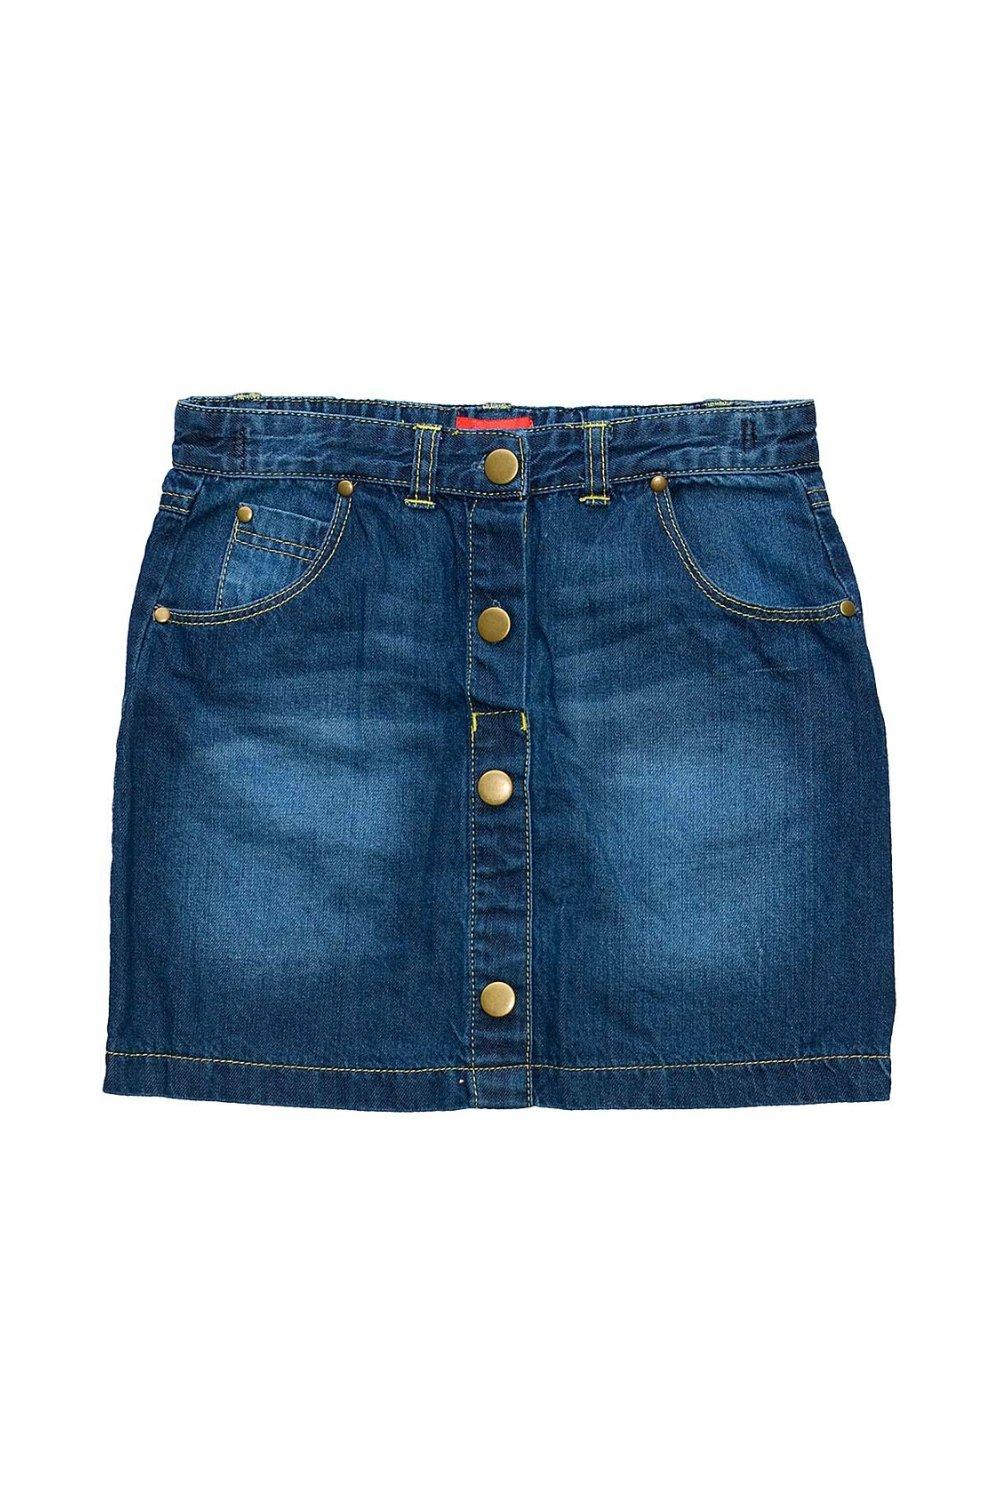 Джинсовая юбка на пуговицах Cozy n Dozy, синий юбка guess джинсовая мини карманы размер 27 черный